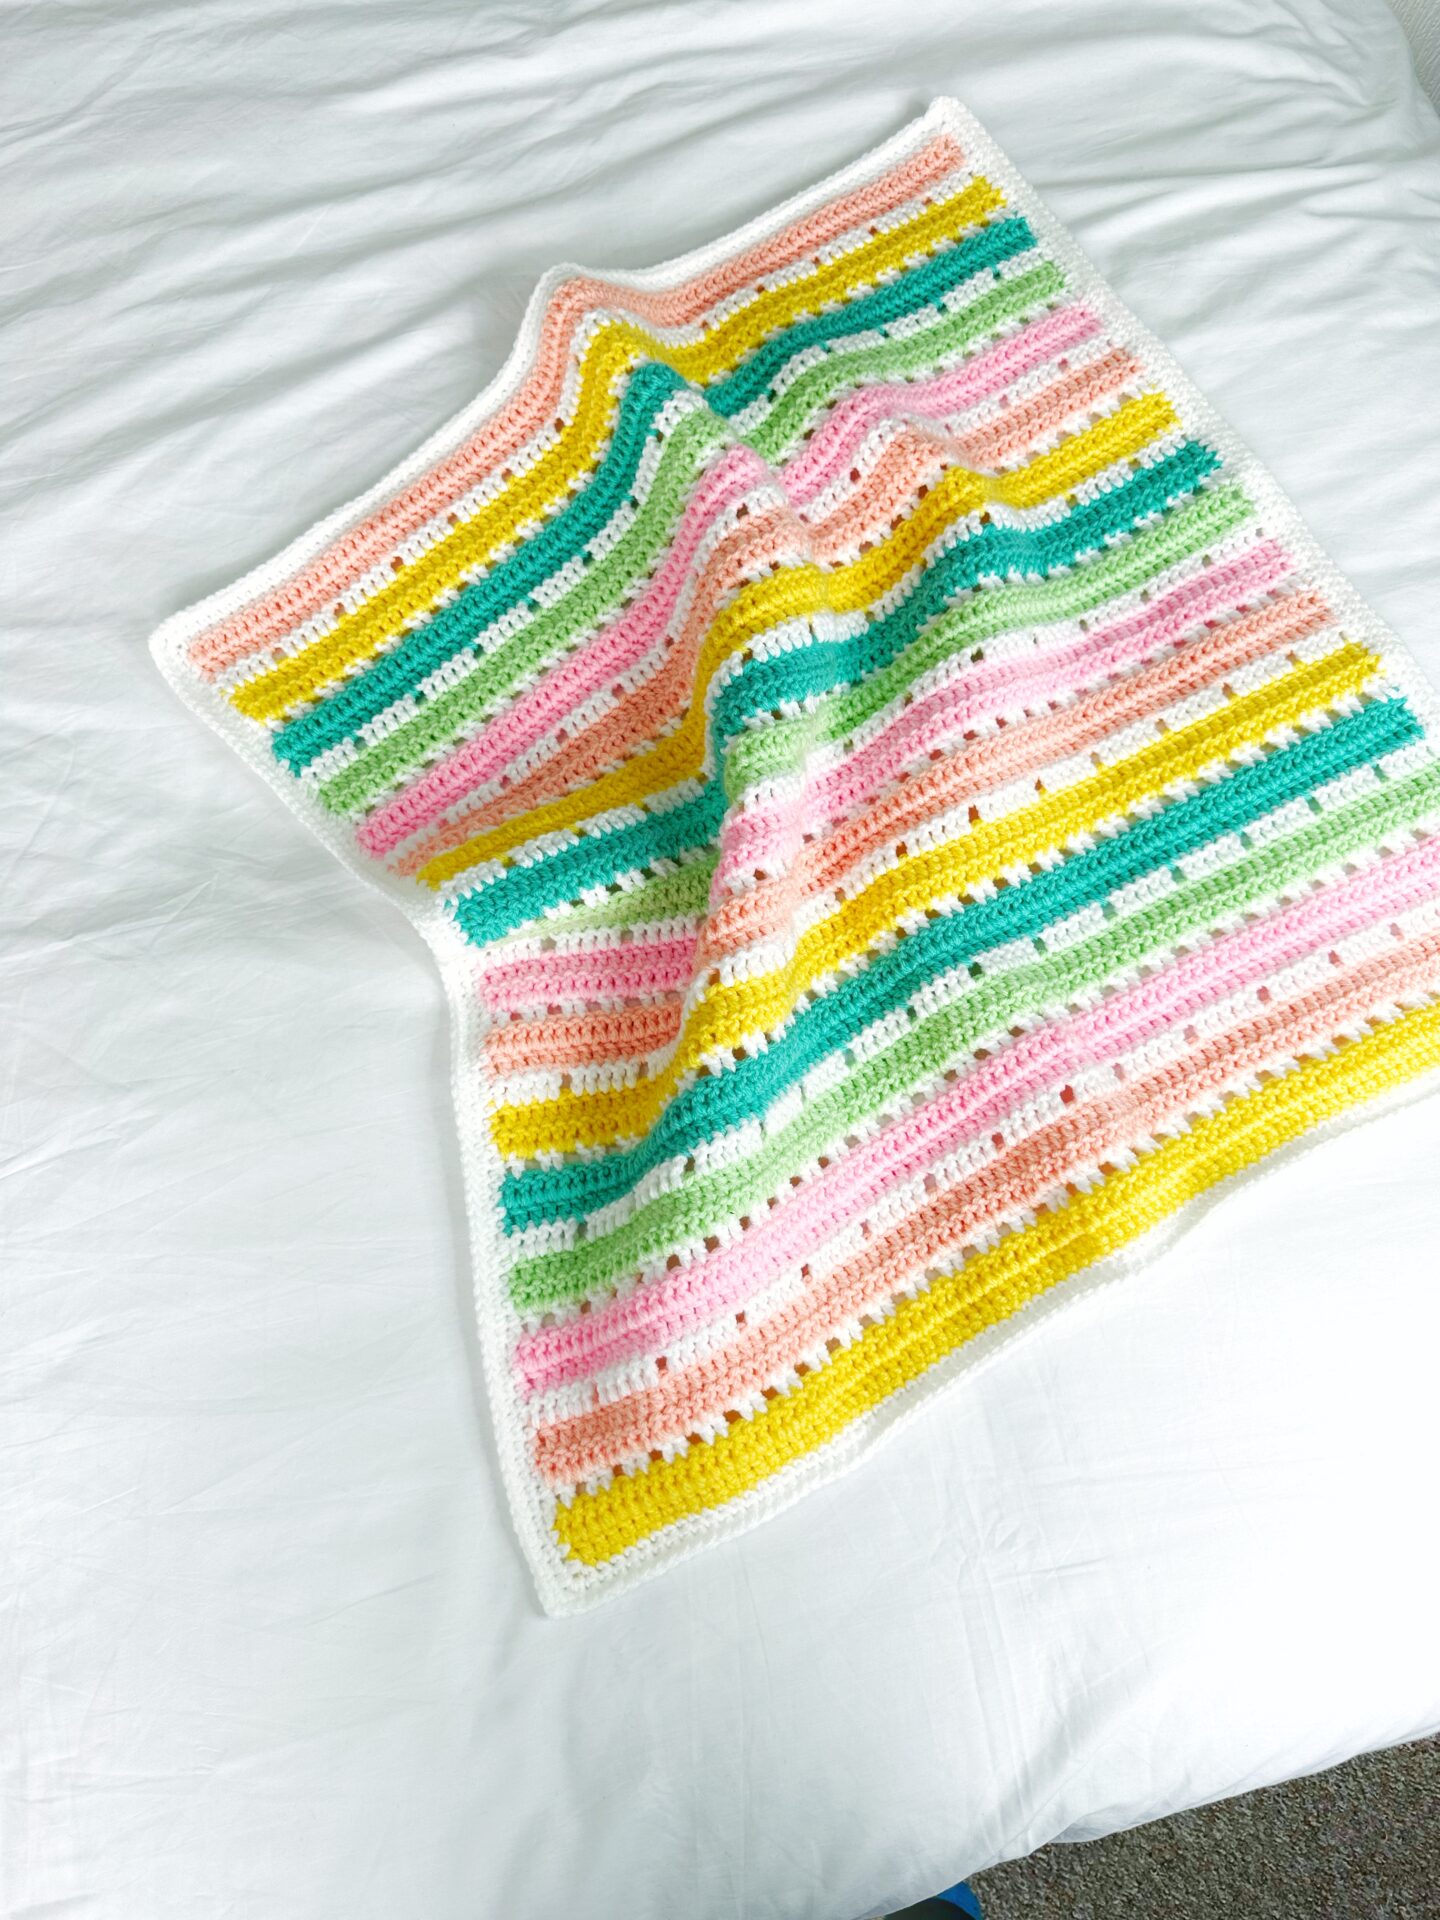 Bailey Blanket Pattern - Free Crochet Pattern